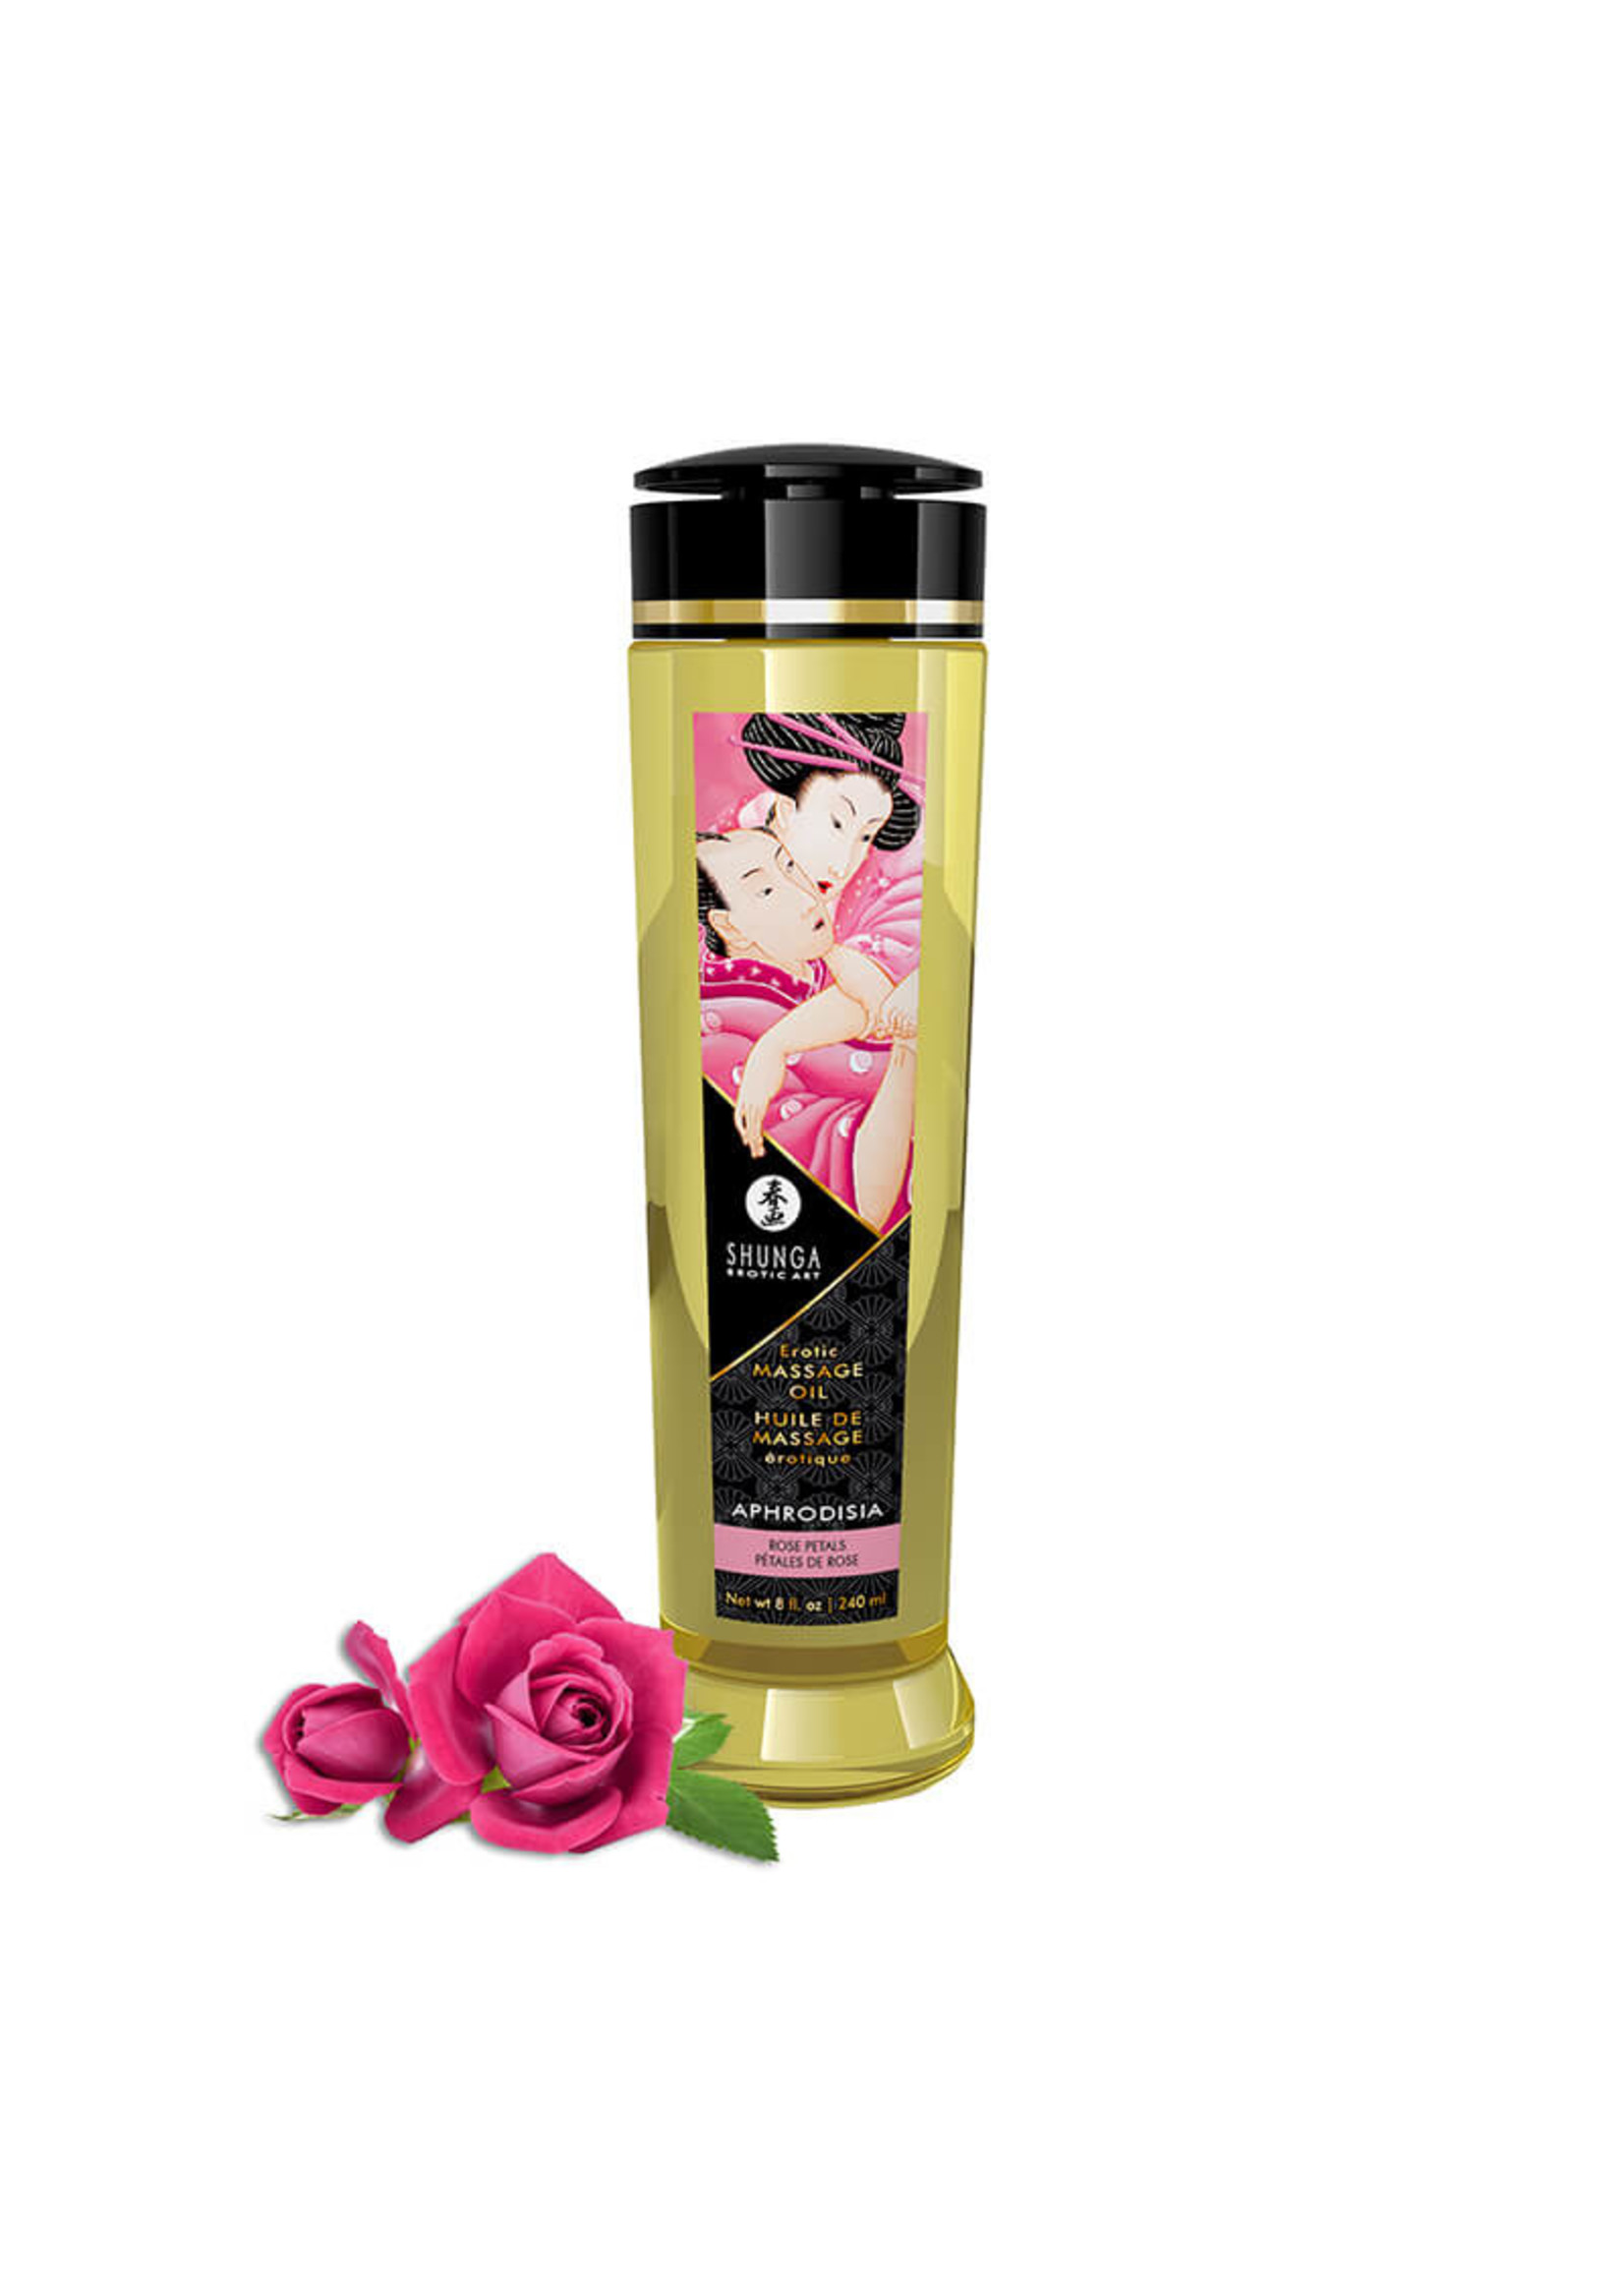 Shunga- Erotic Massage Oil- Rose Petal 8 oz